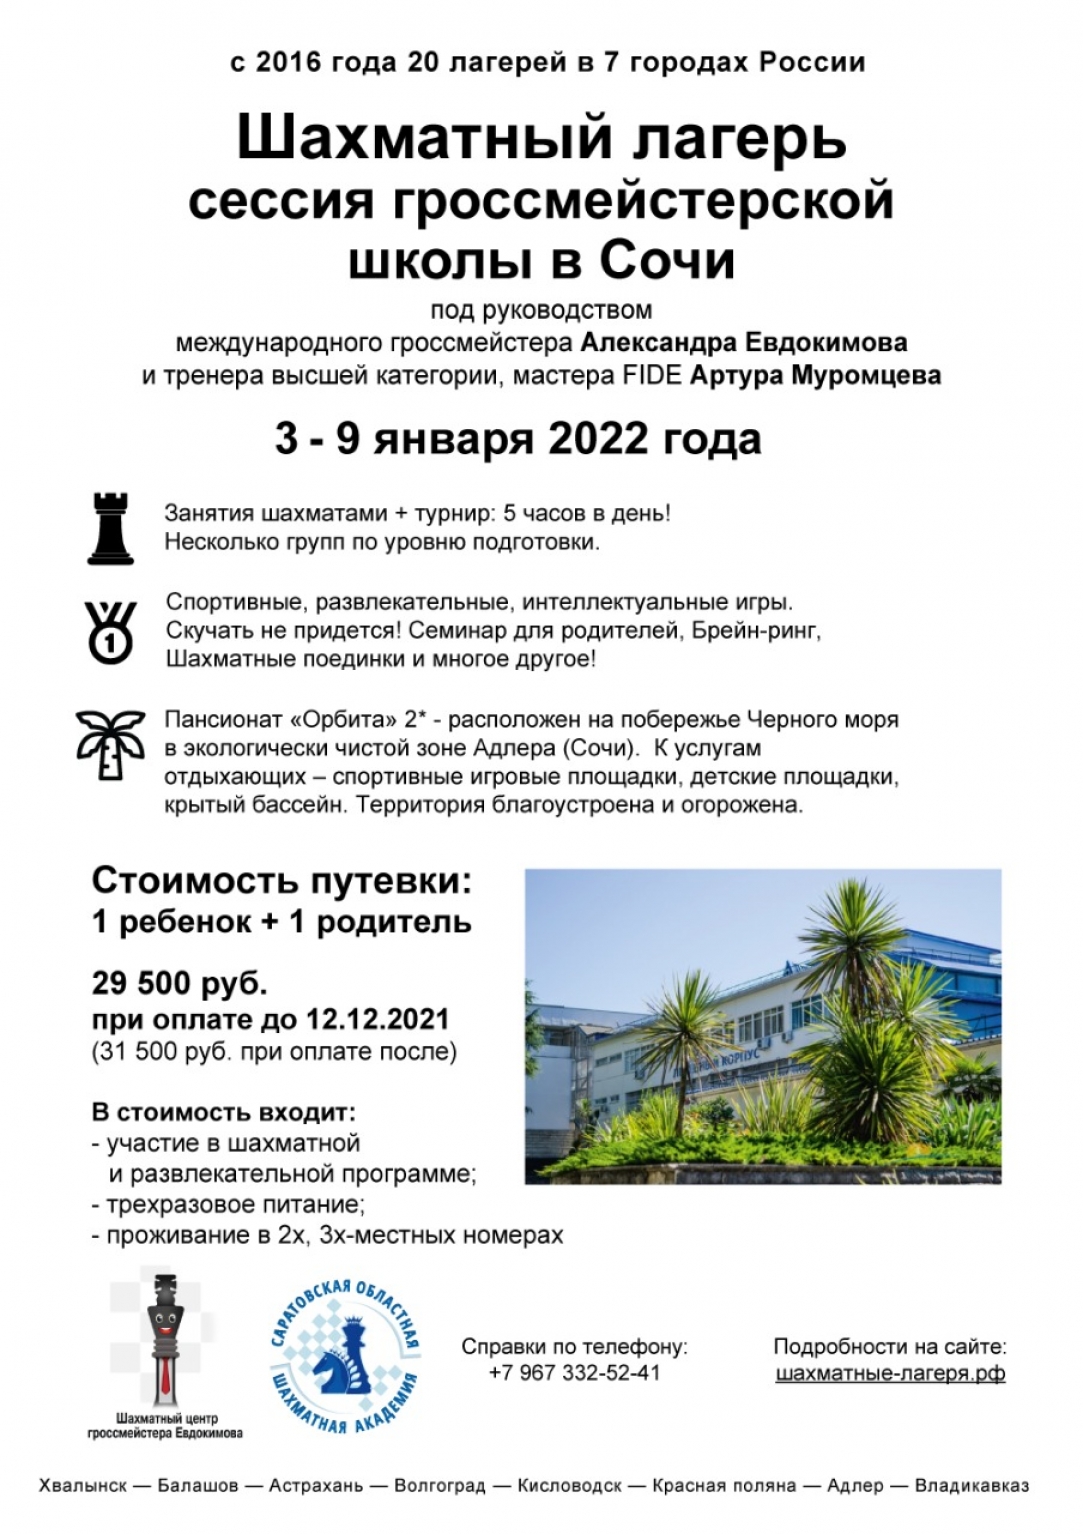 3-9 января гроссмейстерская школа в Сочи